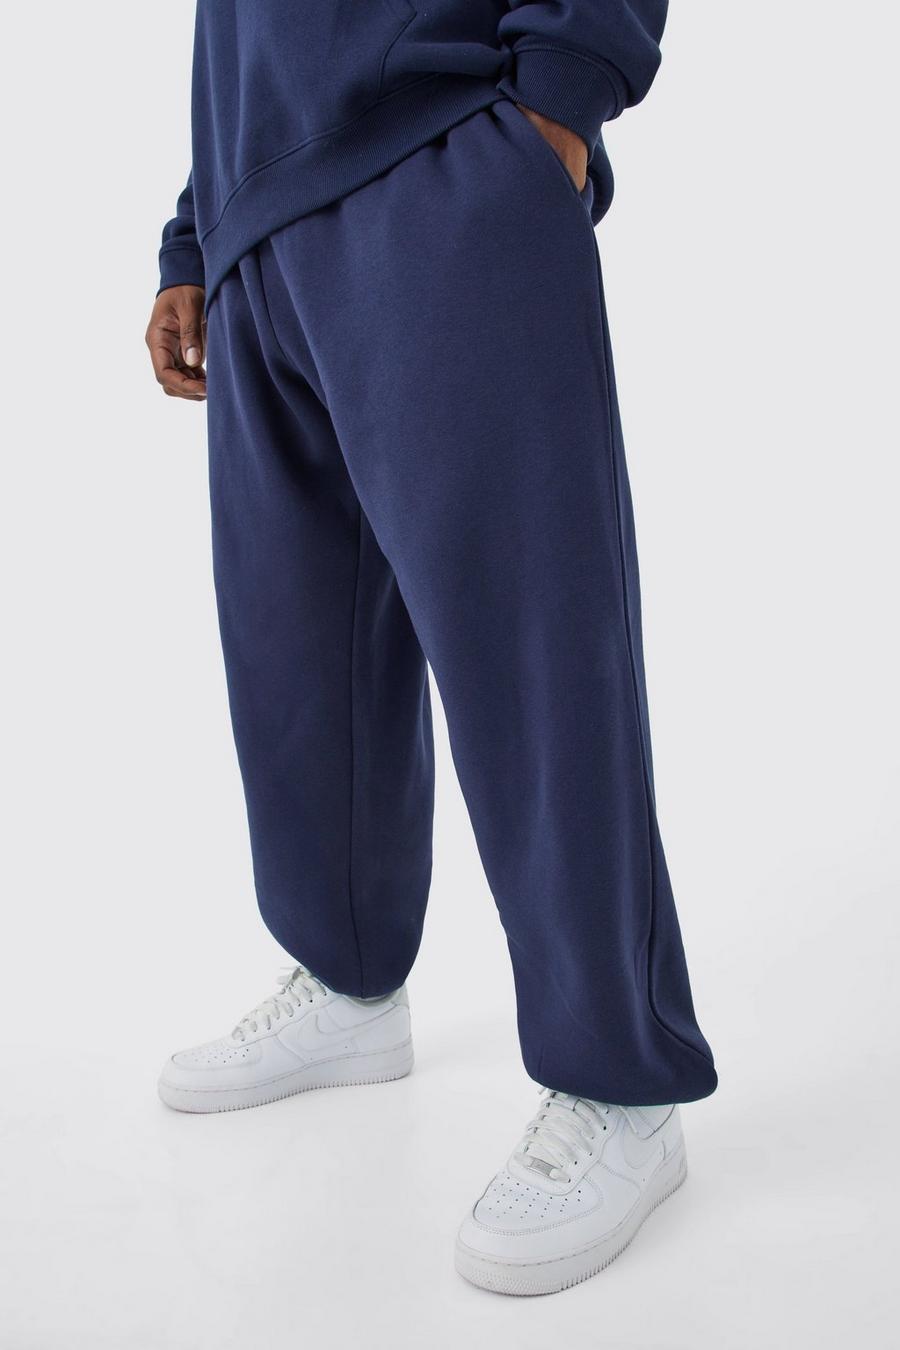 Pantaloni tuta Plus Size oversize Basic, Navy